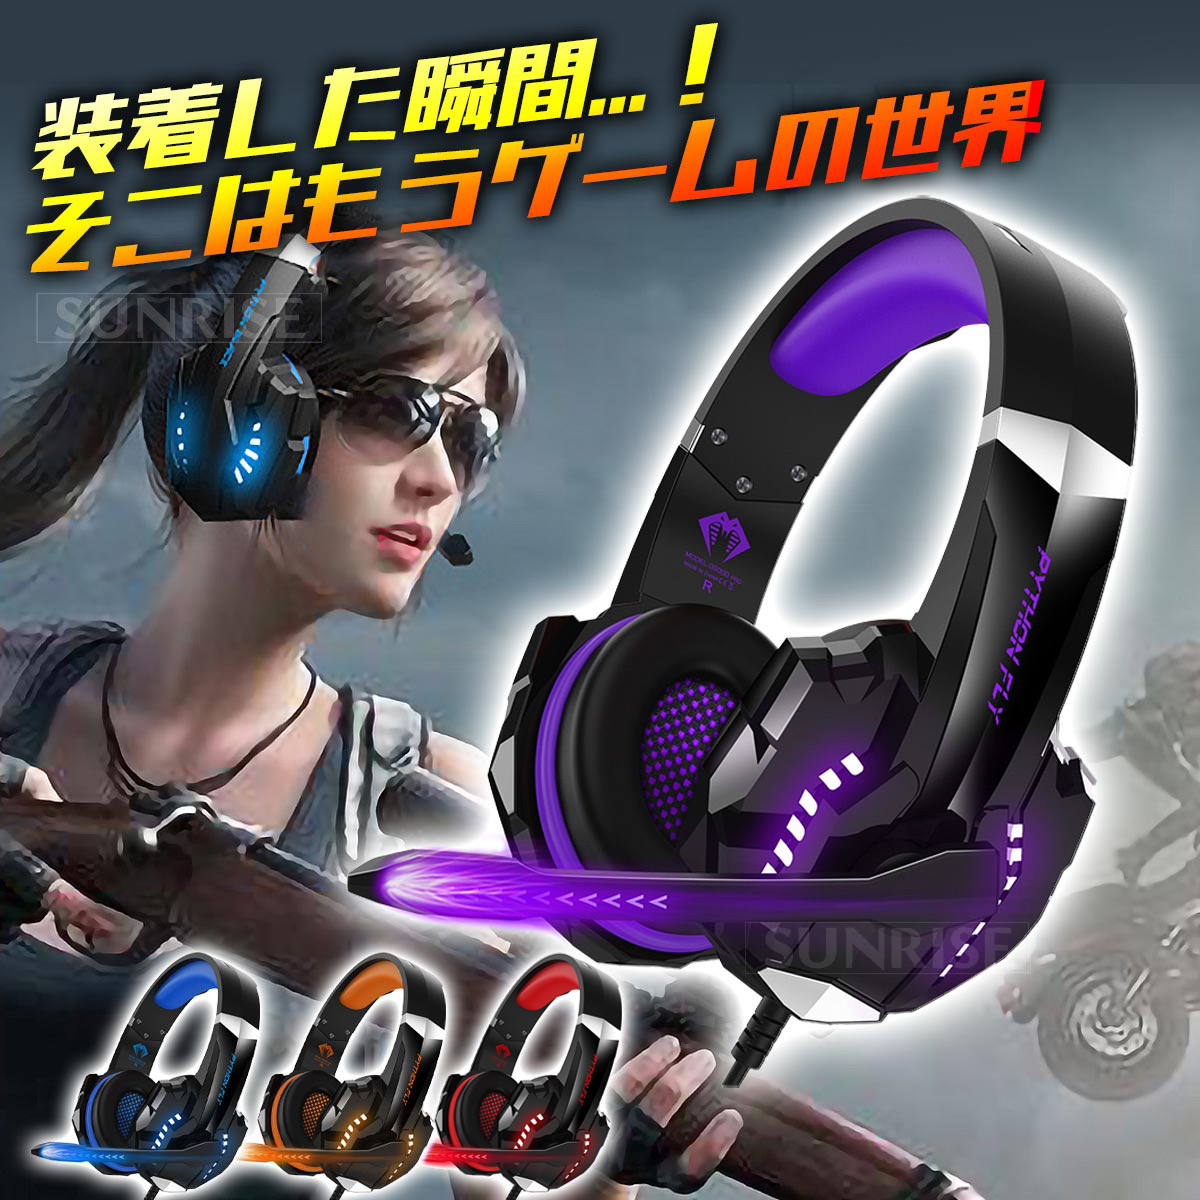  headset наушники наушники проводной ge-ming headset дешевый Mike ge-ming наушники шум отмена кольцо ребенок USB рекомендация 